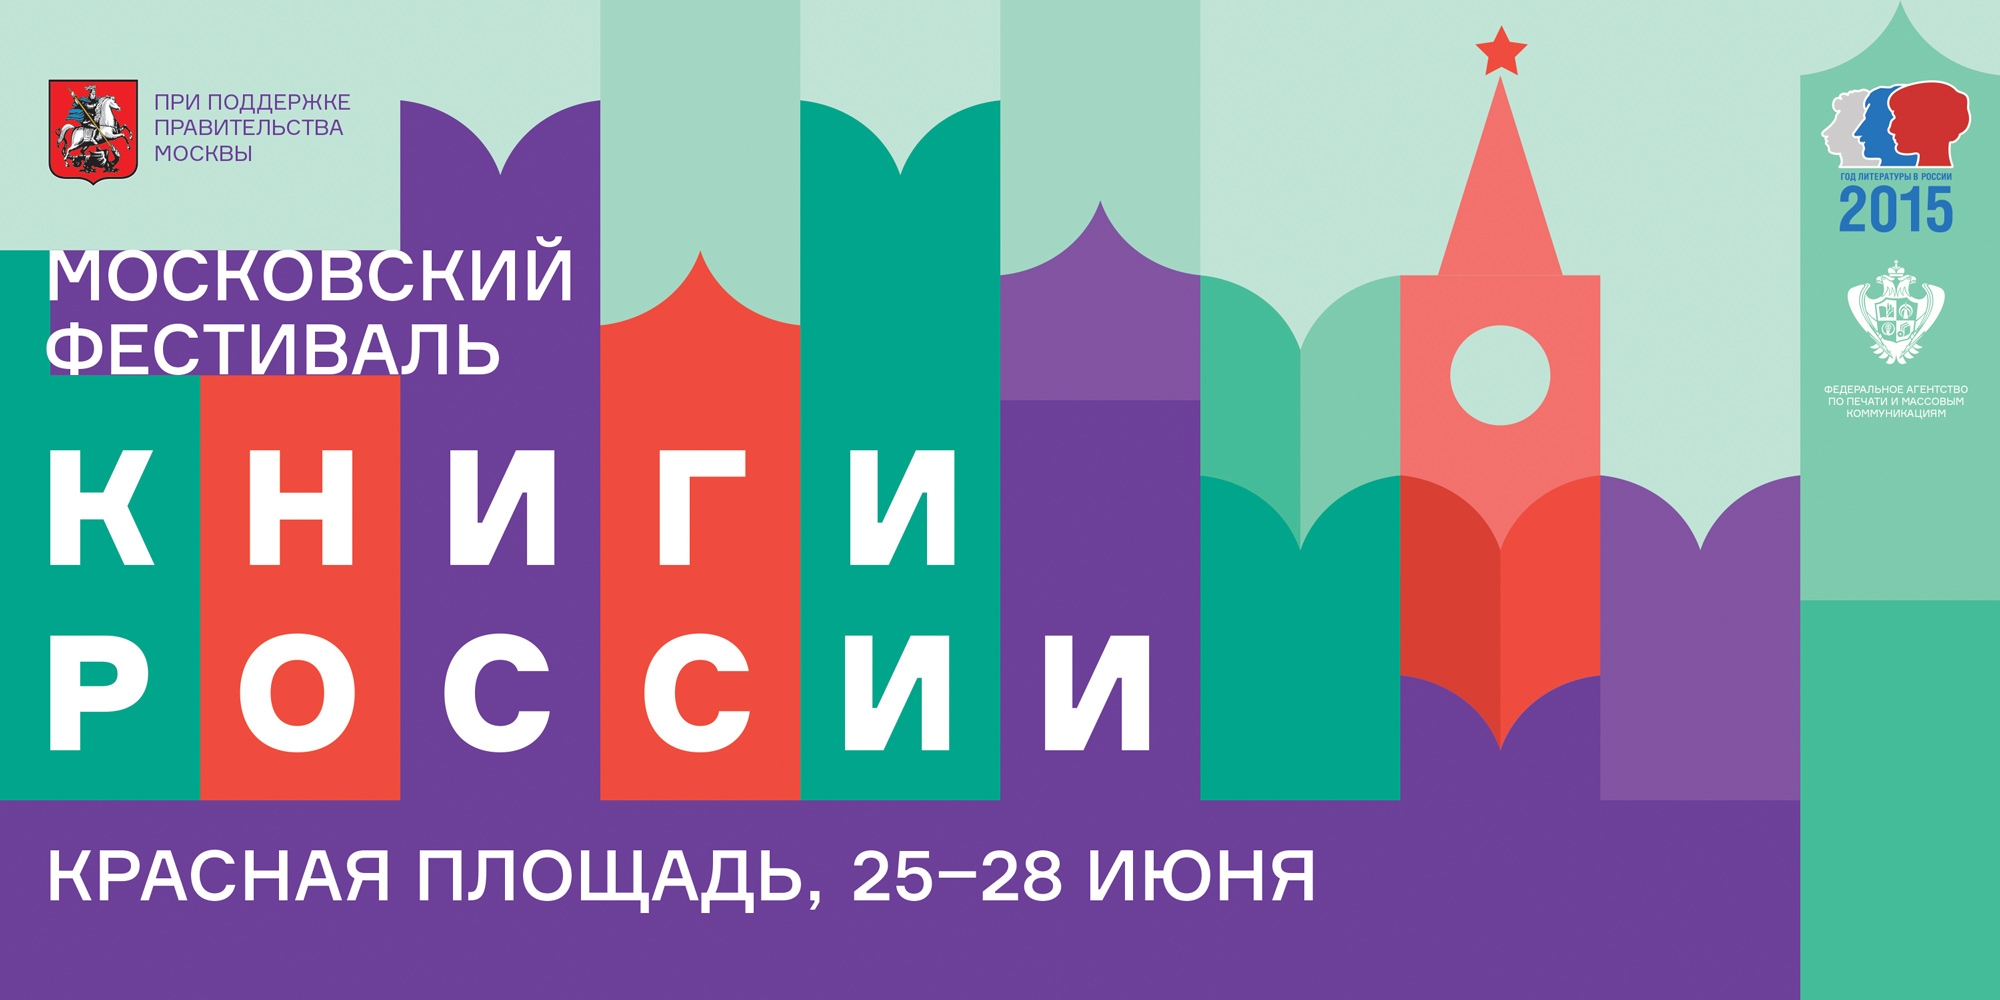 На фестивале «Книги России» презентуют новую книгу о Северянине